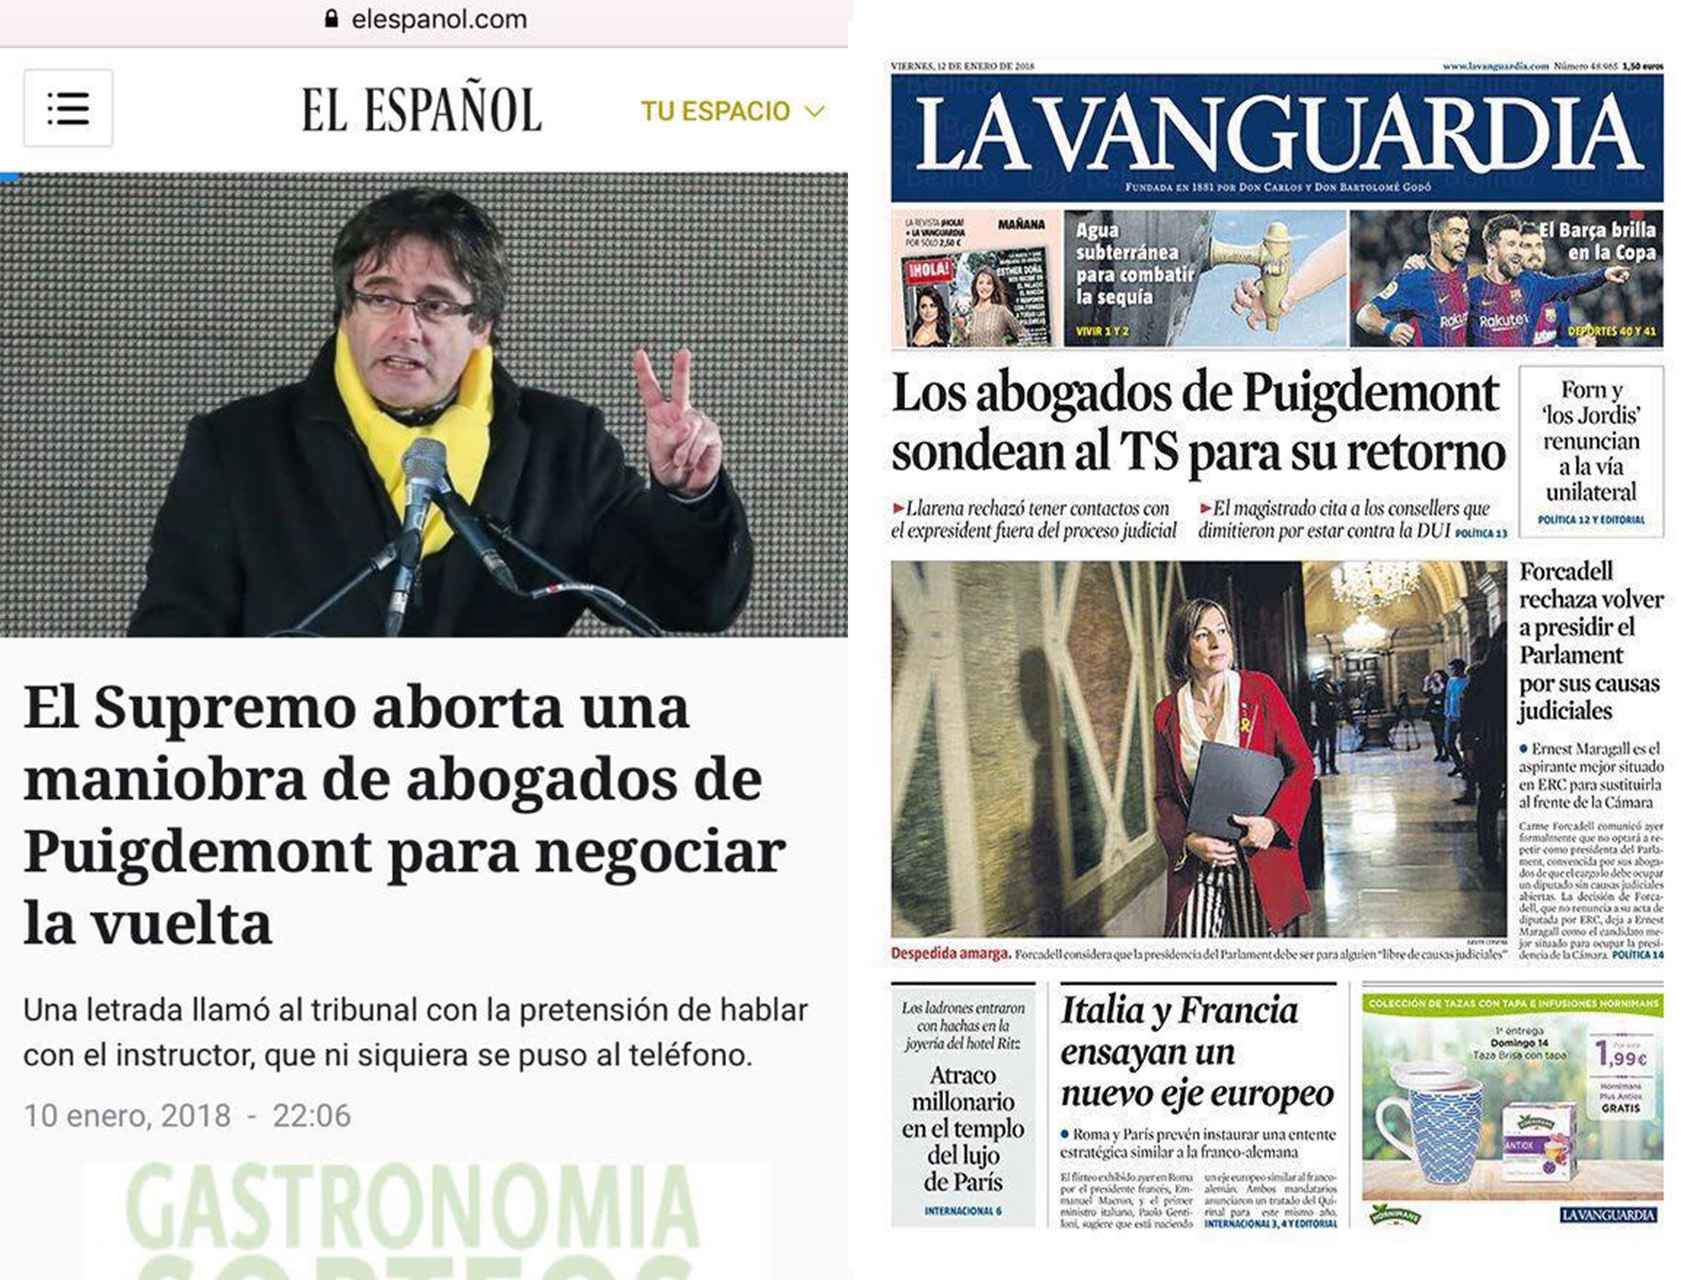 Noticia de El Español del 10 de enero y portada de 'La Vanguardia' del 12 de enero.